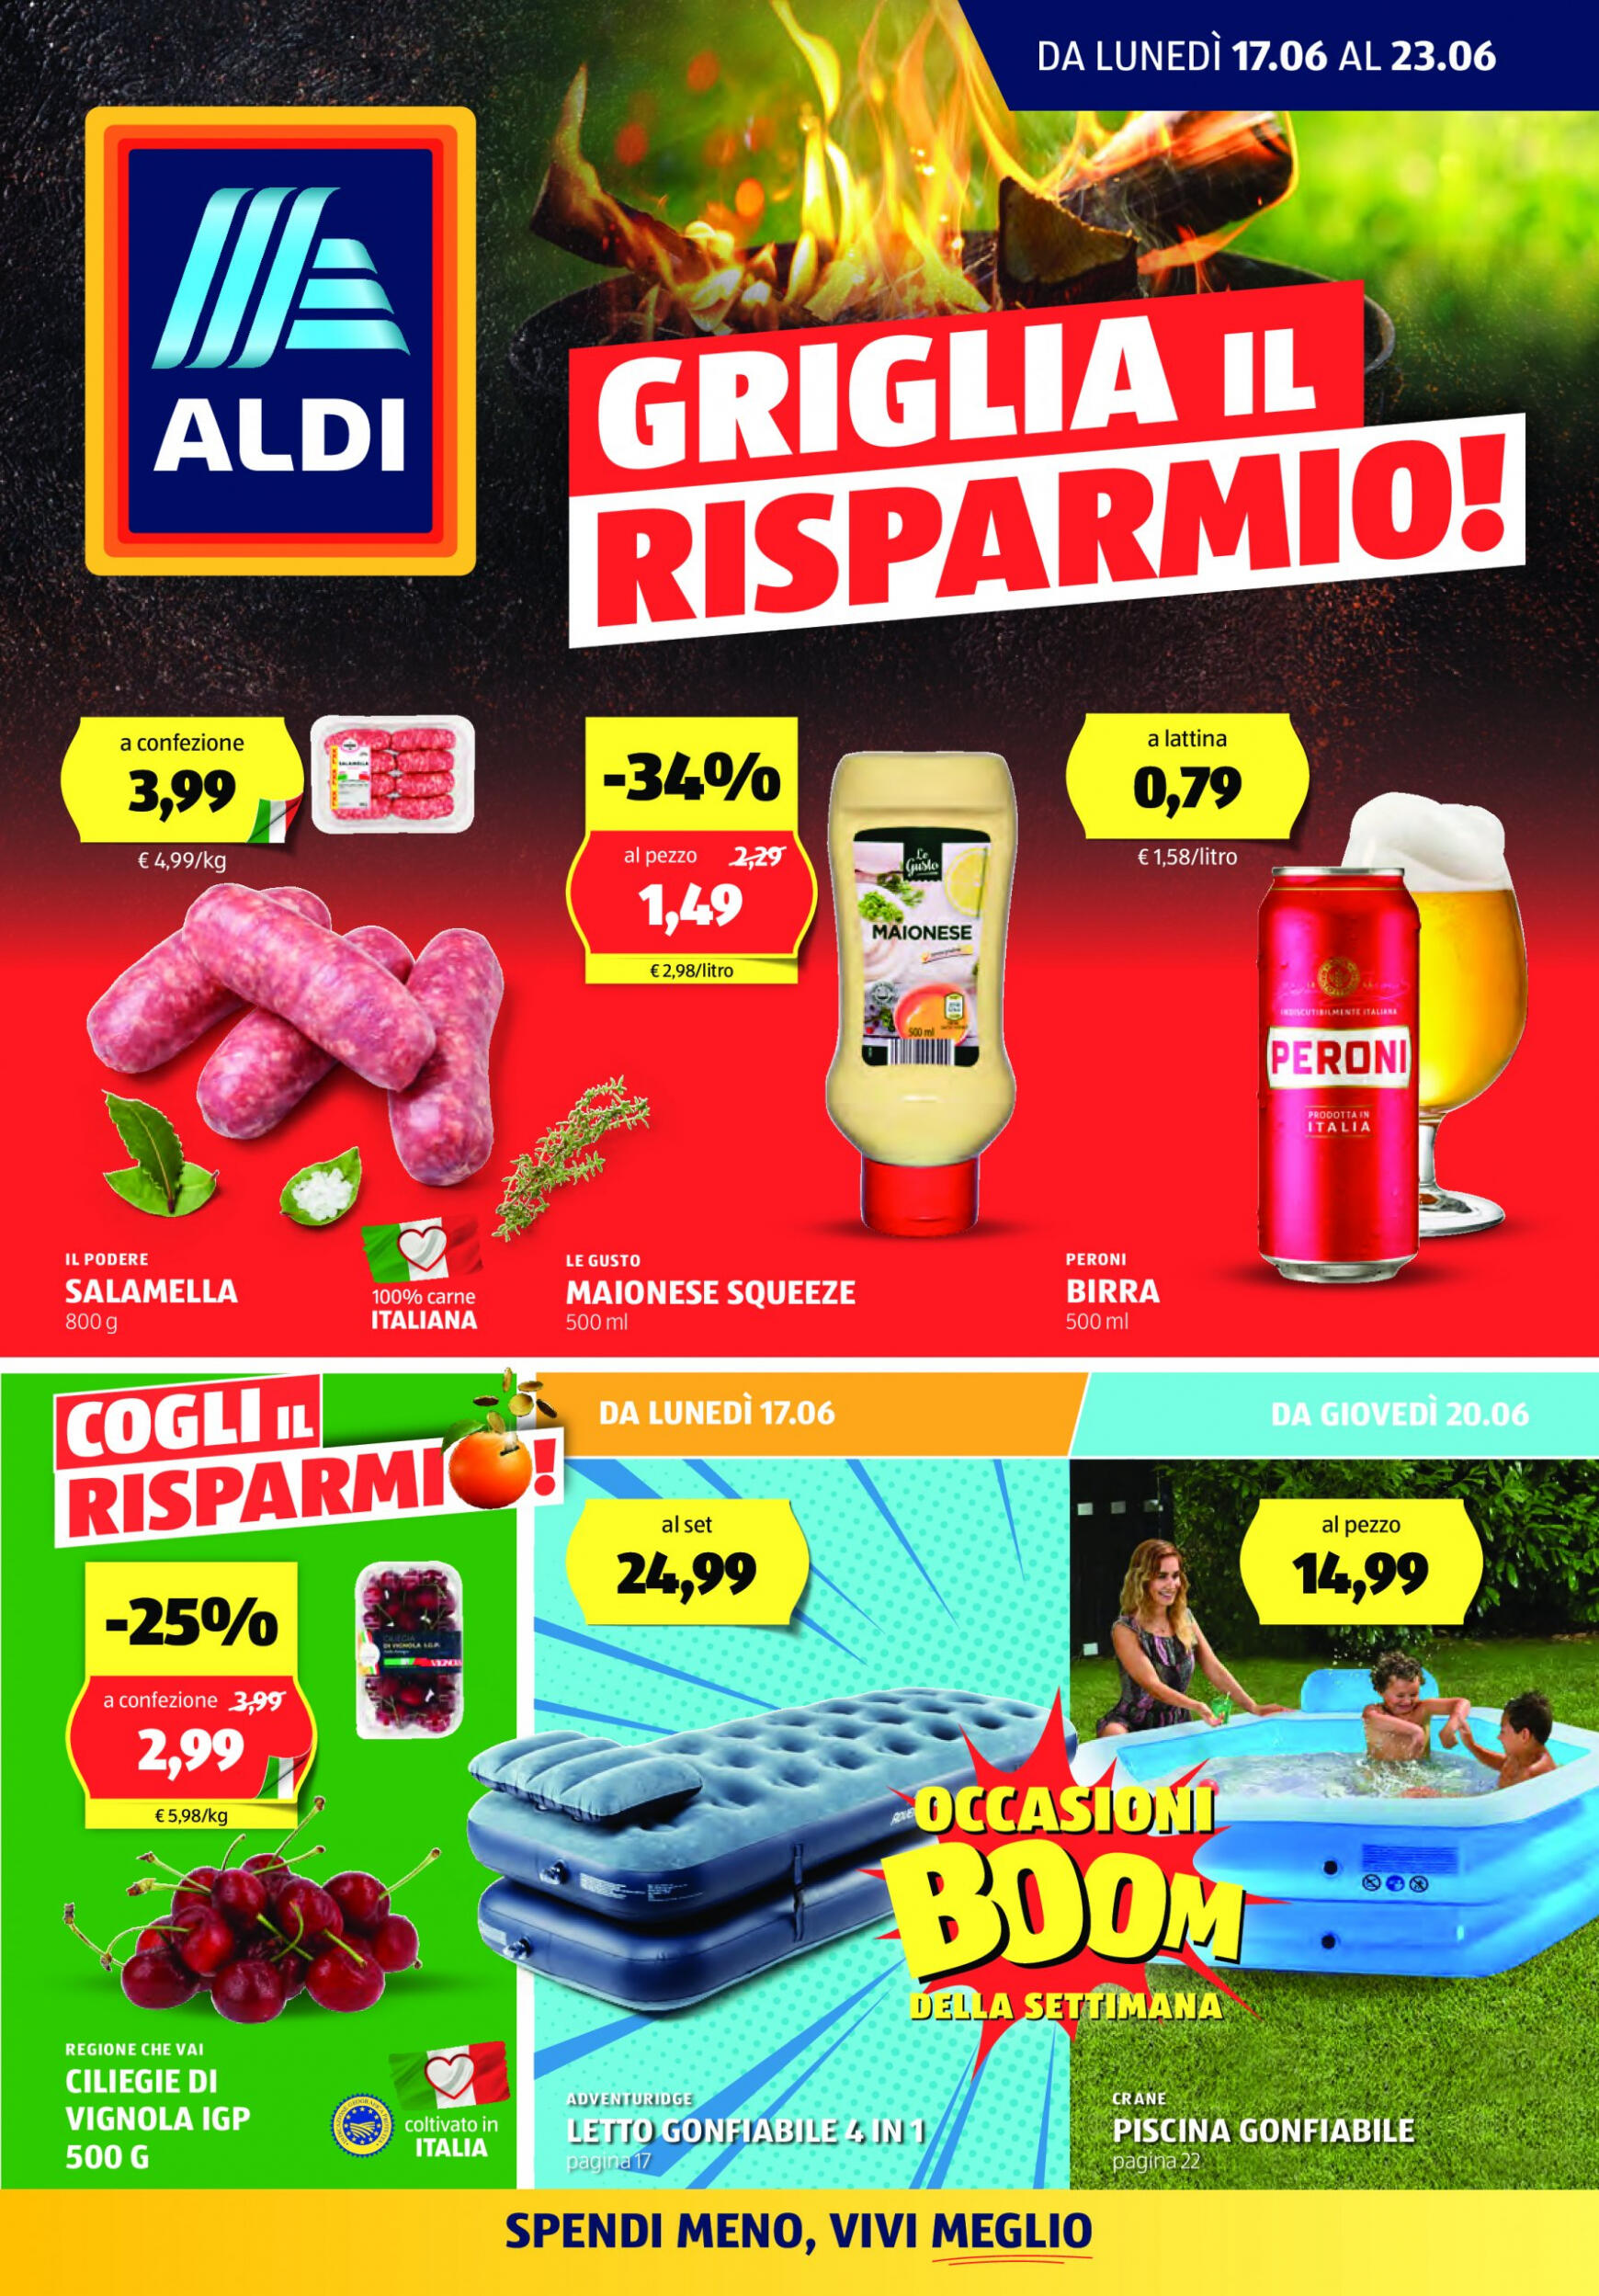 aldi - Nuovo volantino ALDI 17.06. - 23.06. - page: 1